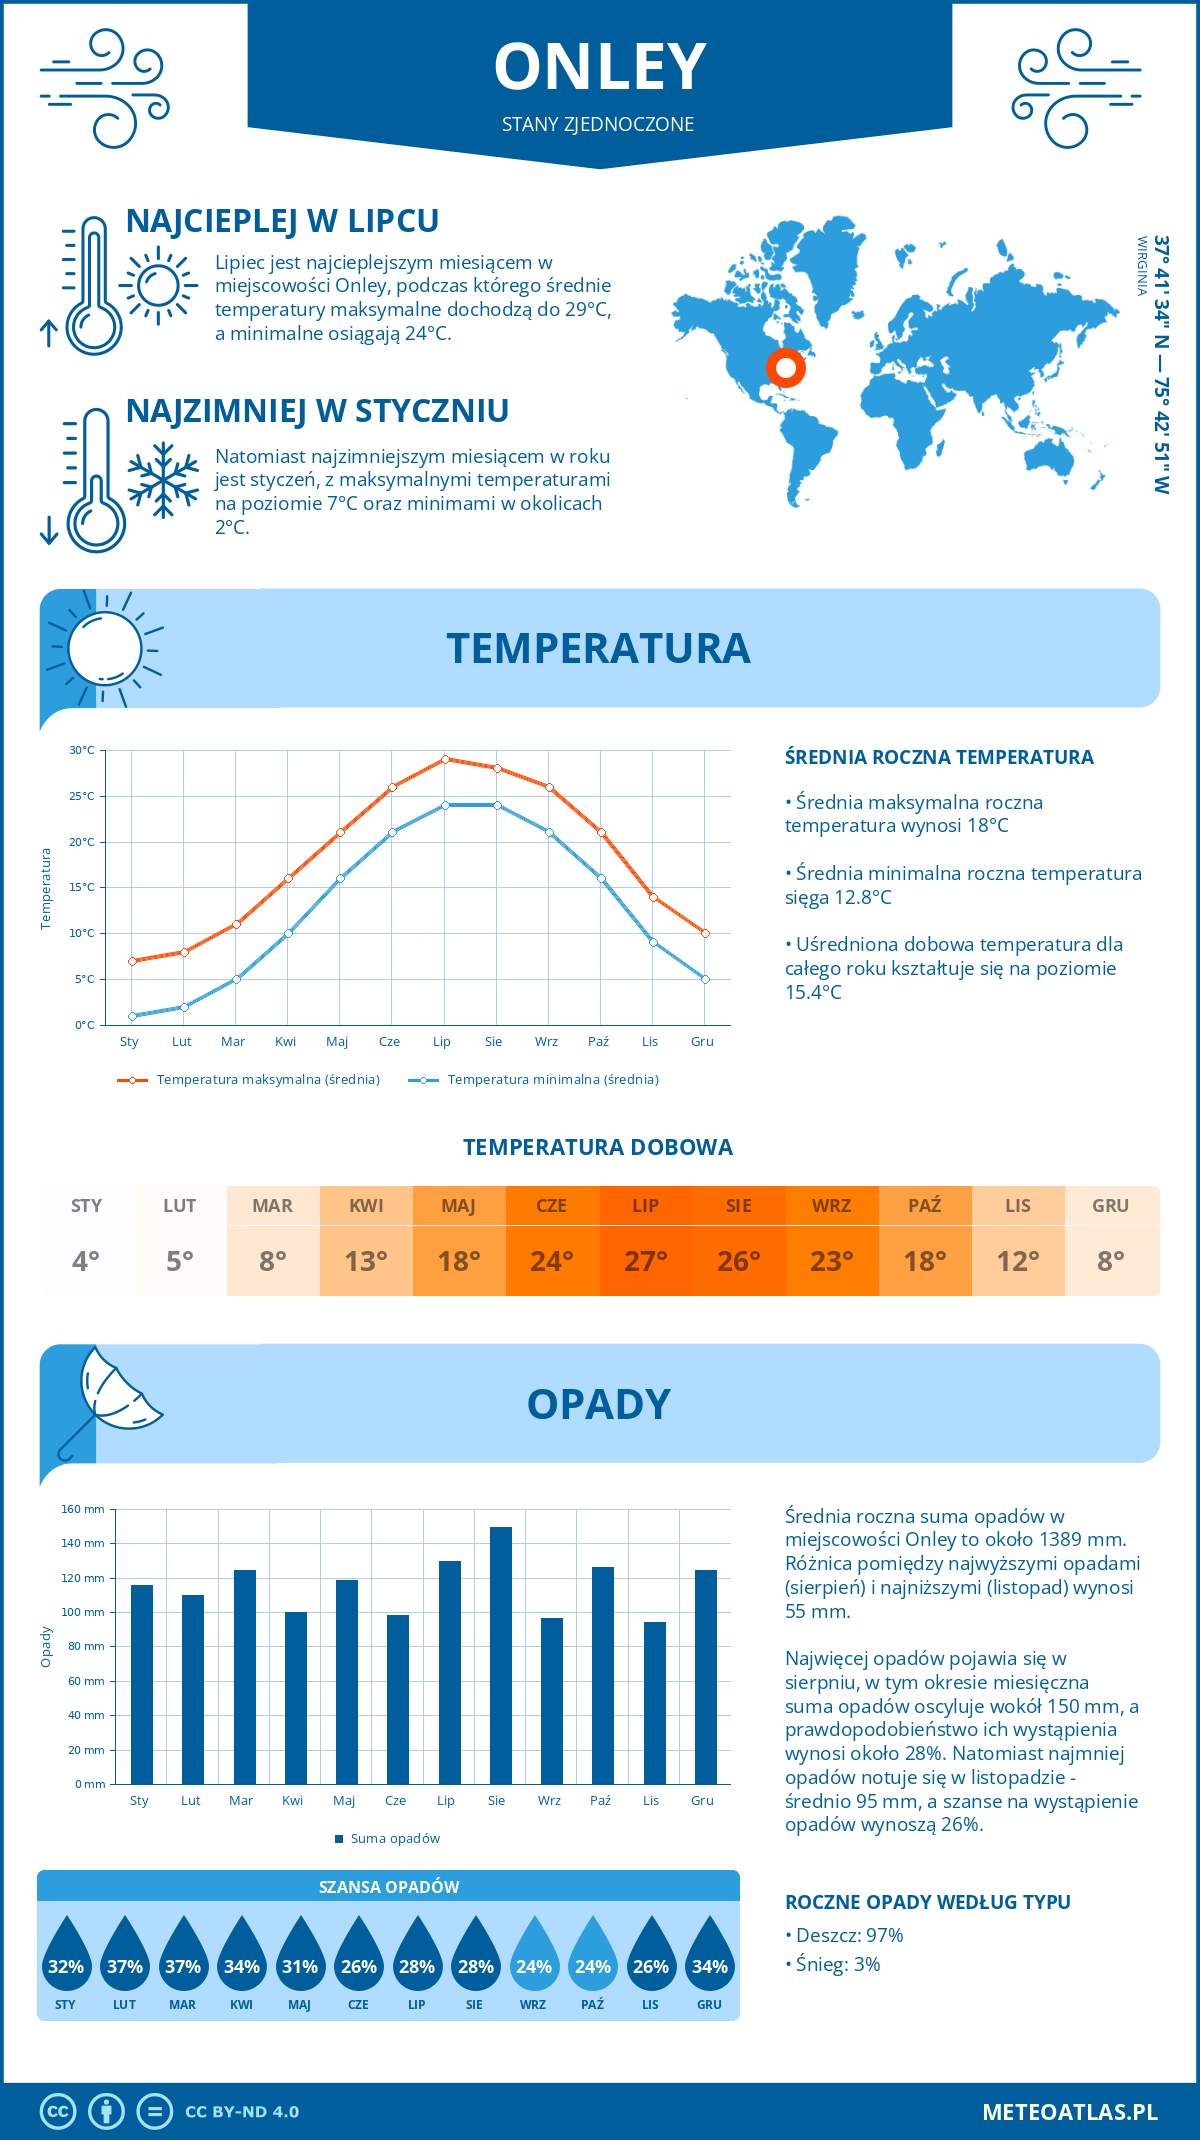 Pogoda Onley (Stany Zjednoczone). Temperatura oraz opady.